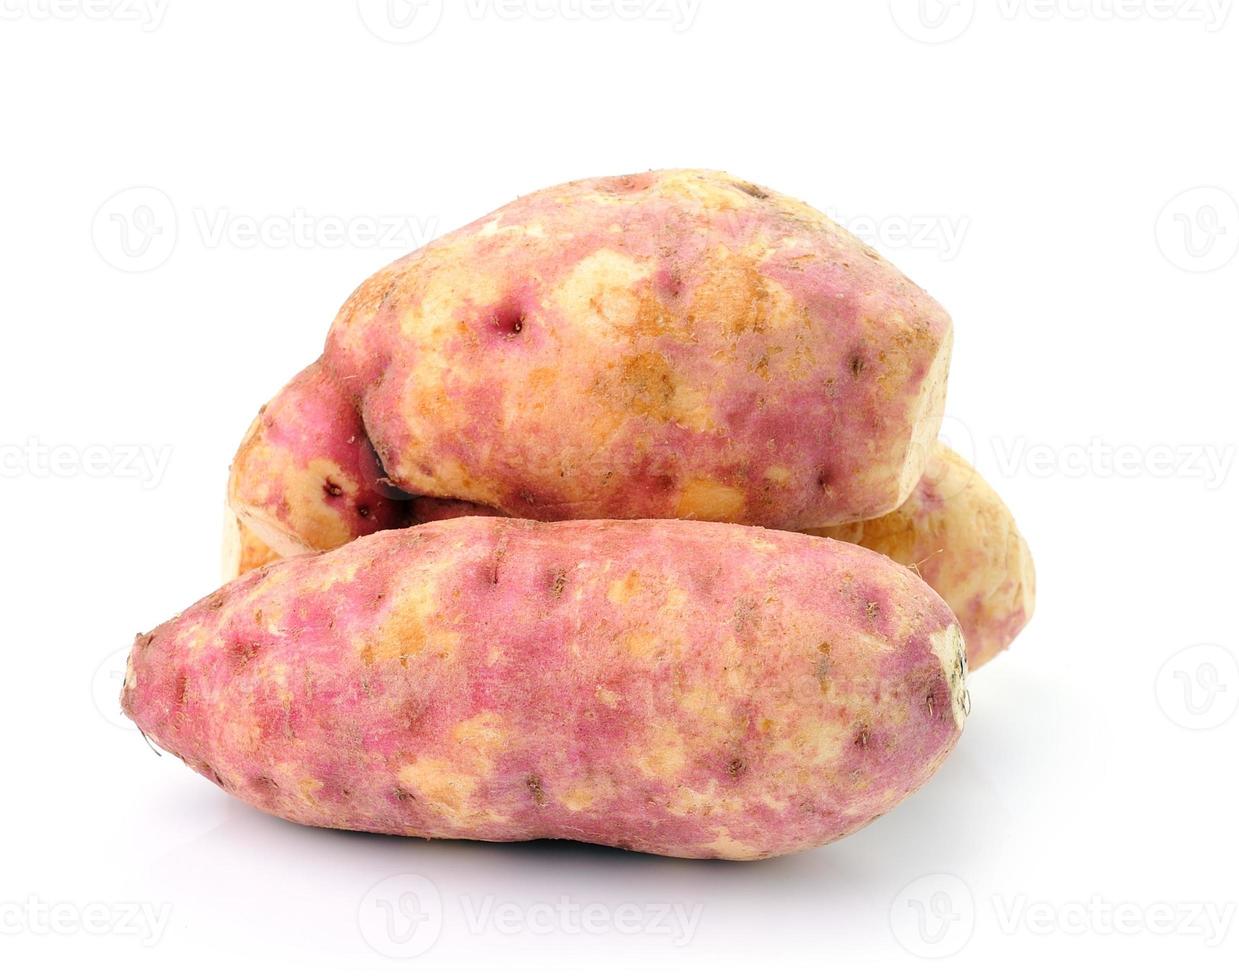 Süßkartoffel auf weißem Hintergrund foto